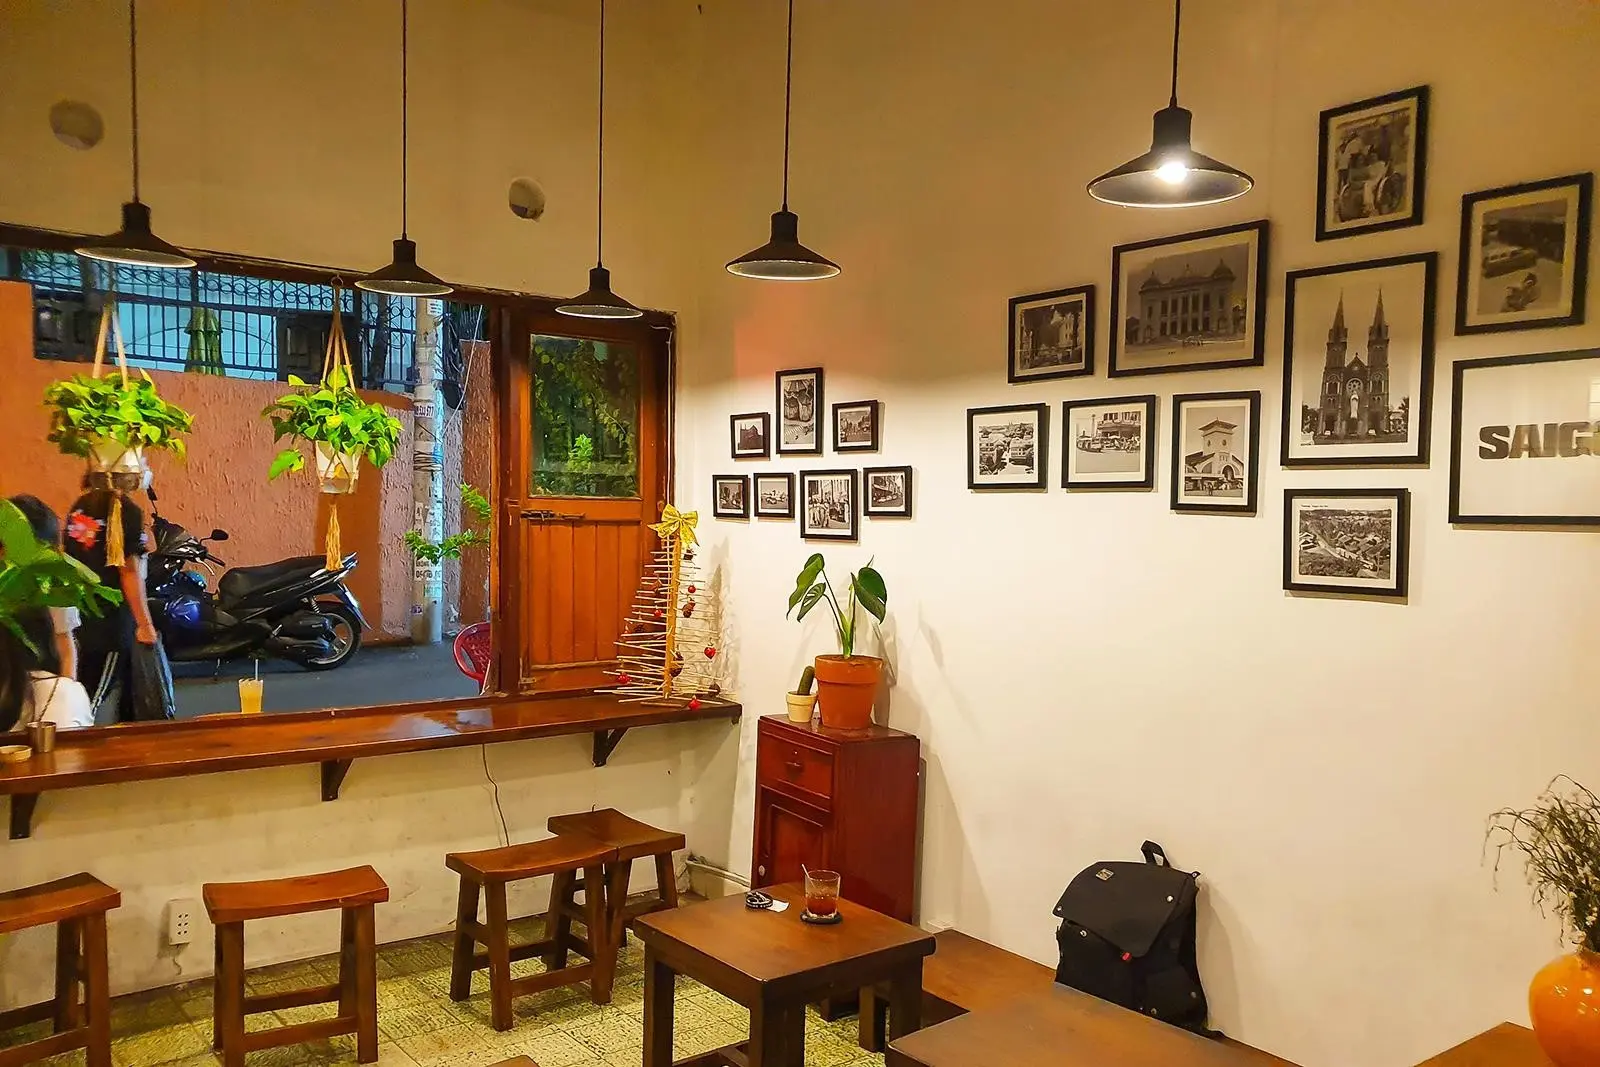 An Cà Phê là một quán cà phê nổi tiếng ở thành phố Hồ Chí Minh, nổi bật với không gian thiết kế hiện đại, phục vụ đa dạng các loại đồ uống và món ăn ngon.